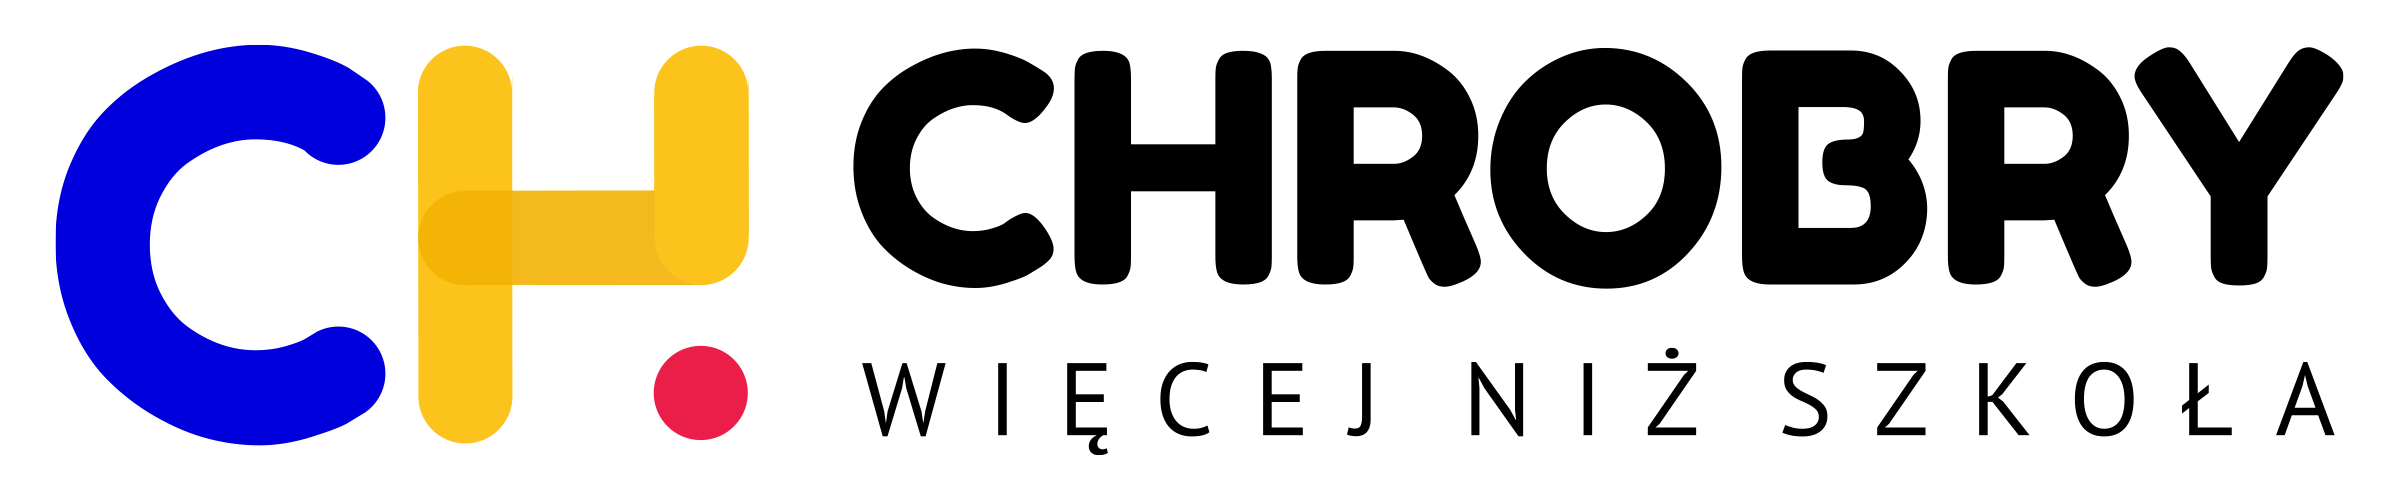 Logo Chrobry Transparentne horyzontalne